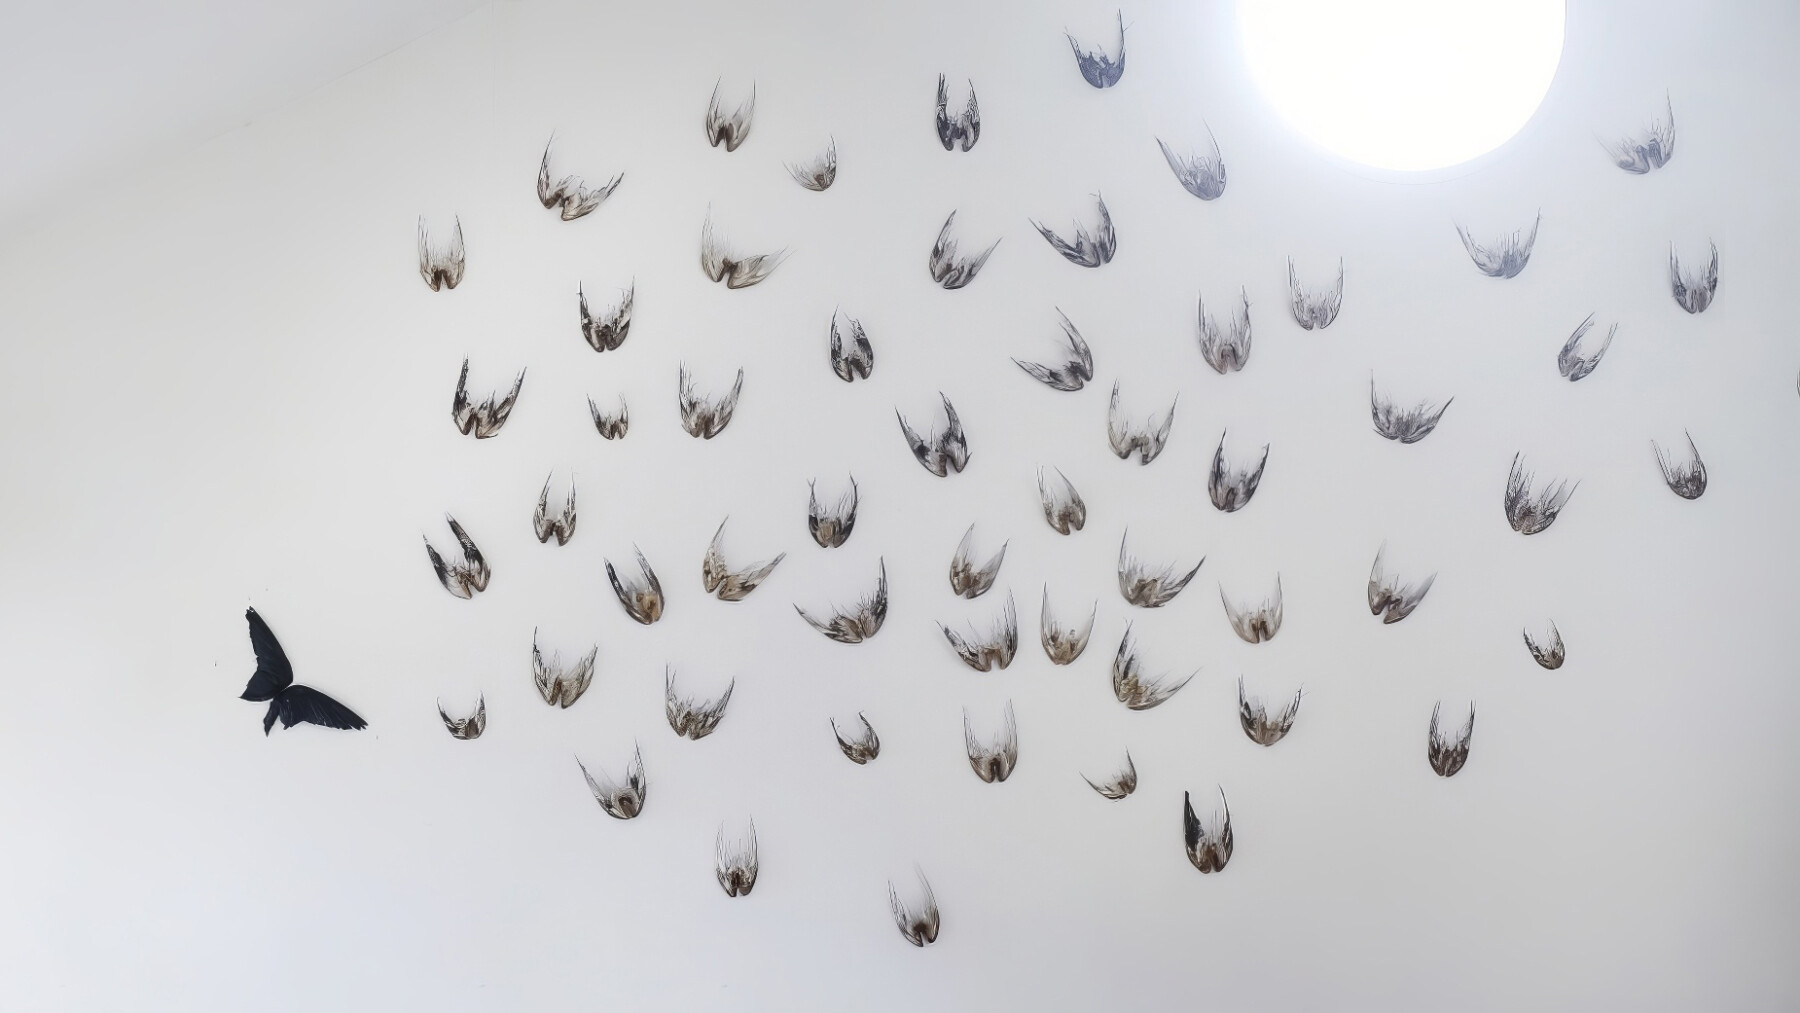 Decenas de alas de pájaro sobre un fondo blanco.